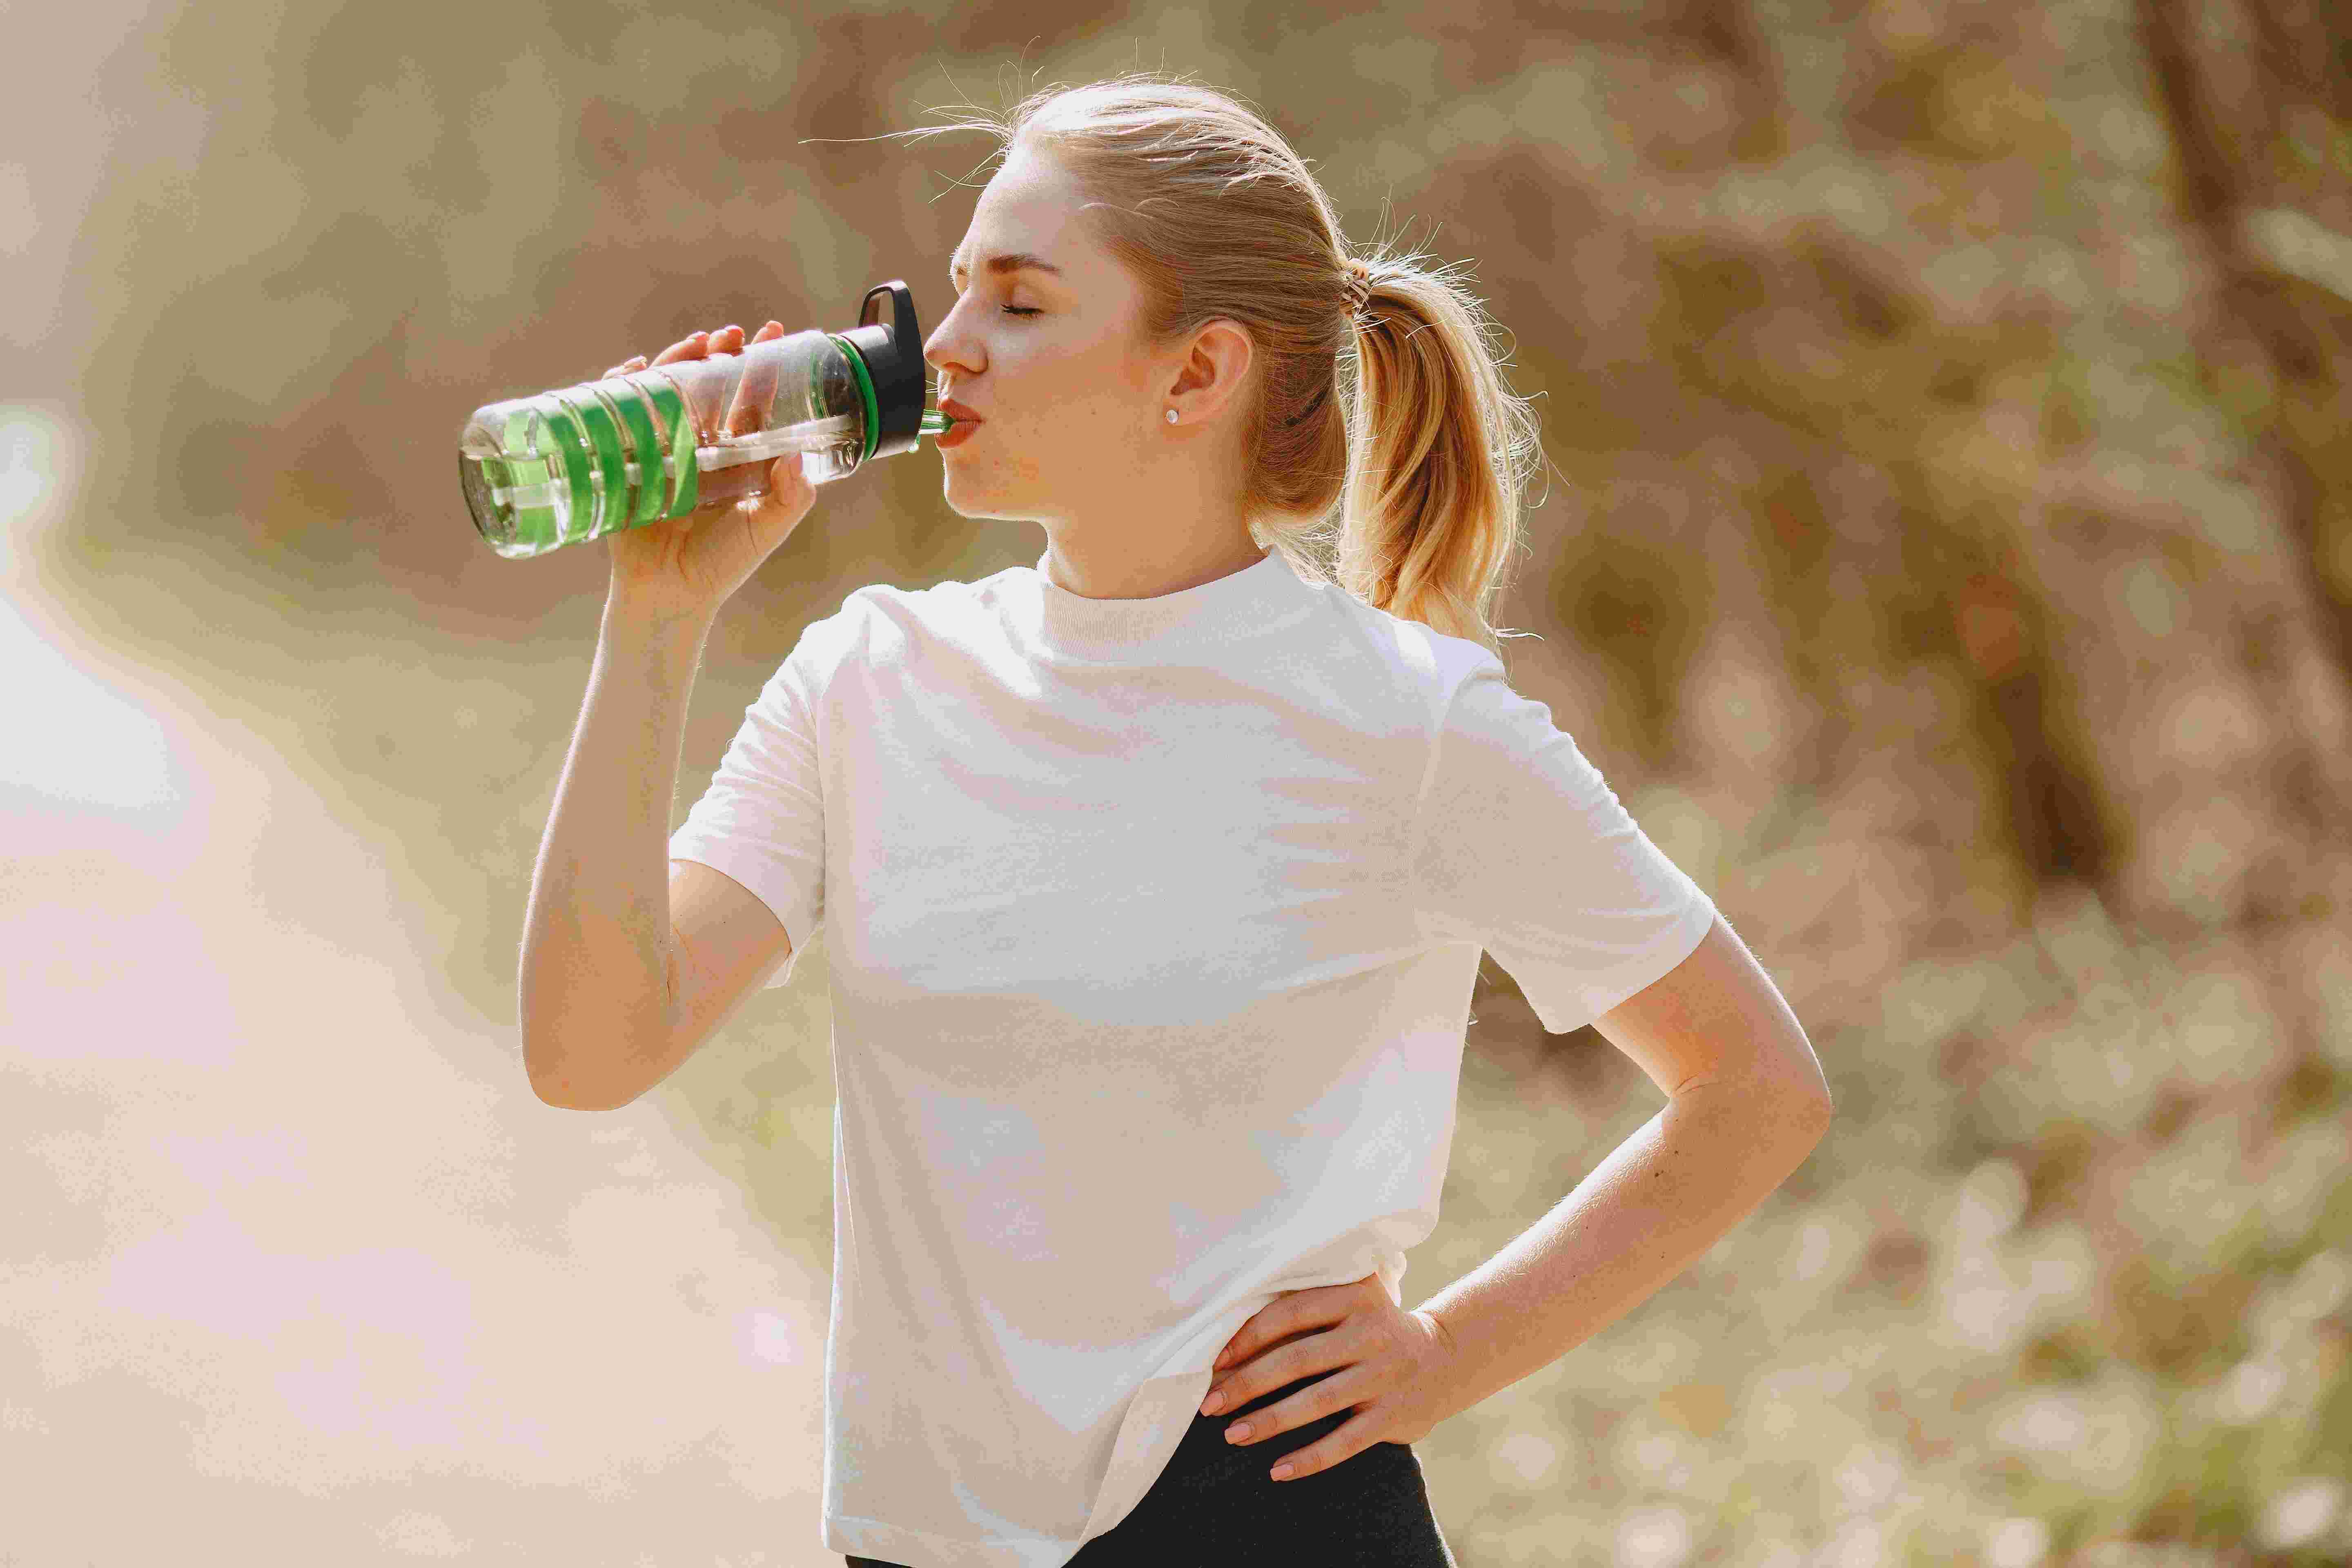 Beber água e fazer exercícios leves ajuda a evitar os sinais de desidratação